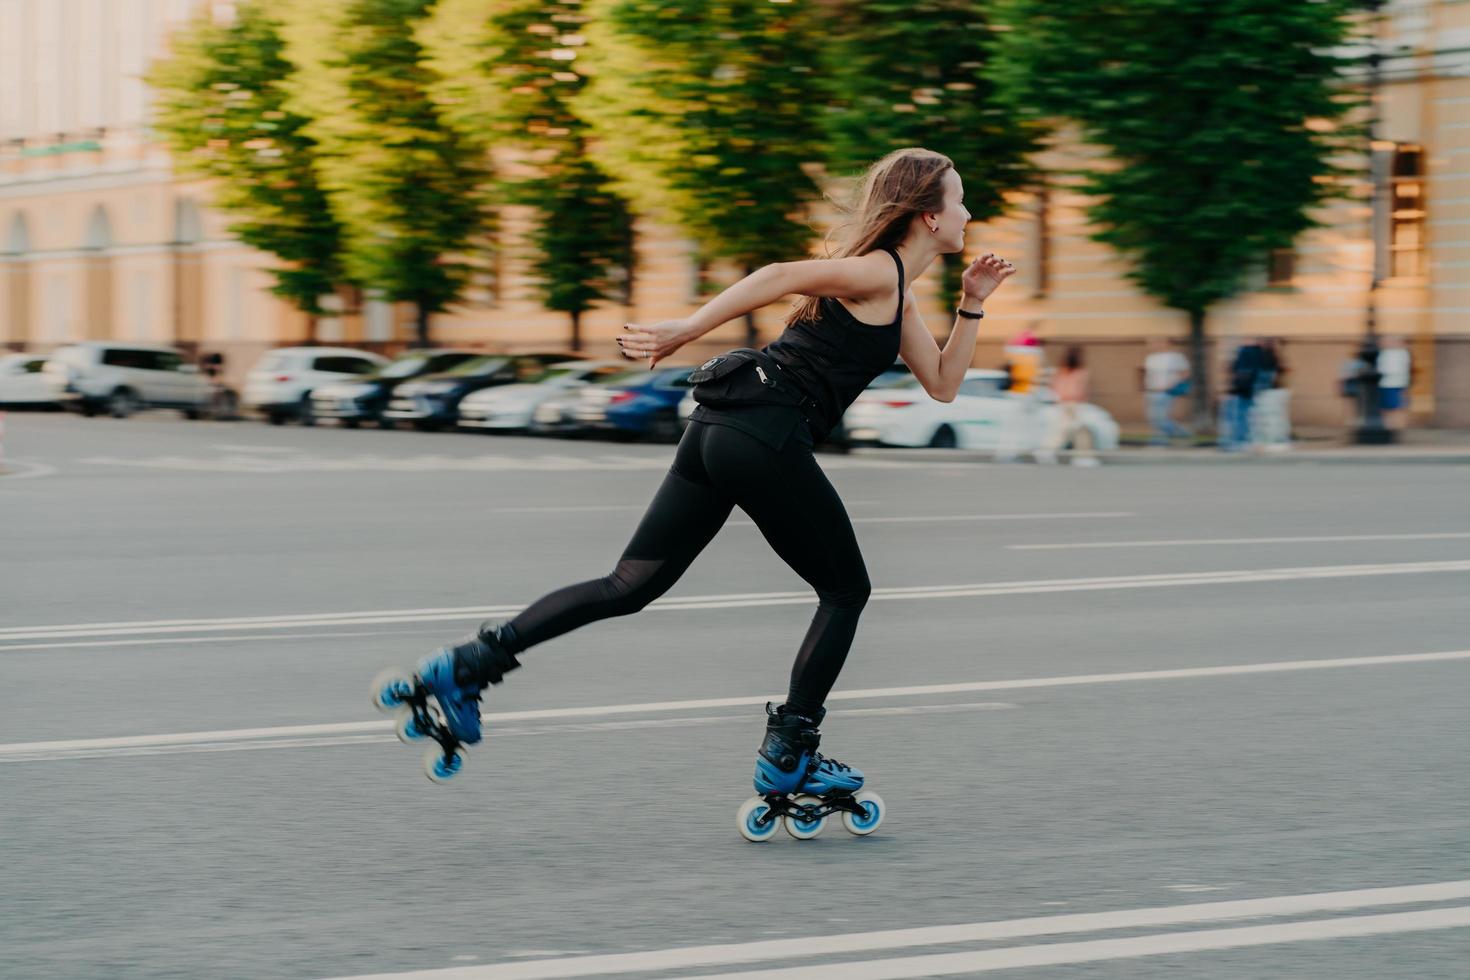 rodillo femenino profesional demuestra sus habilidades de paseos en patines muy rápidamente en la carretera a lo largo de la ciudad disfruta de un día soleado vestido con ropa activa negra. pasatiempo de estilo de vida activo y actividad física foto